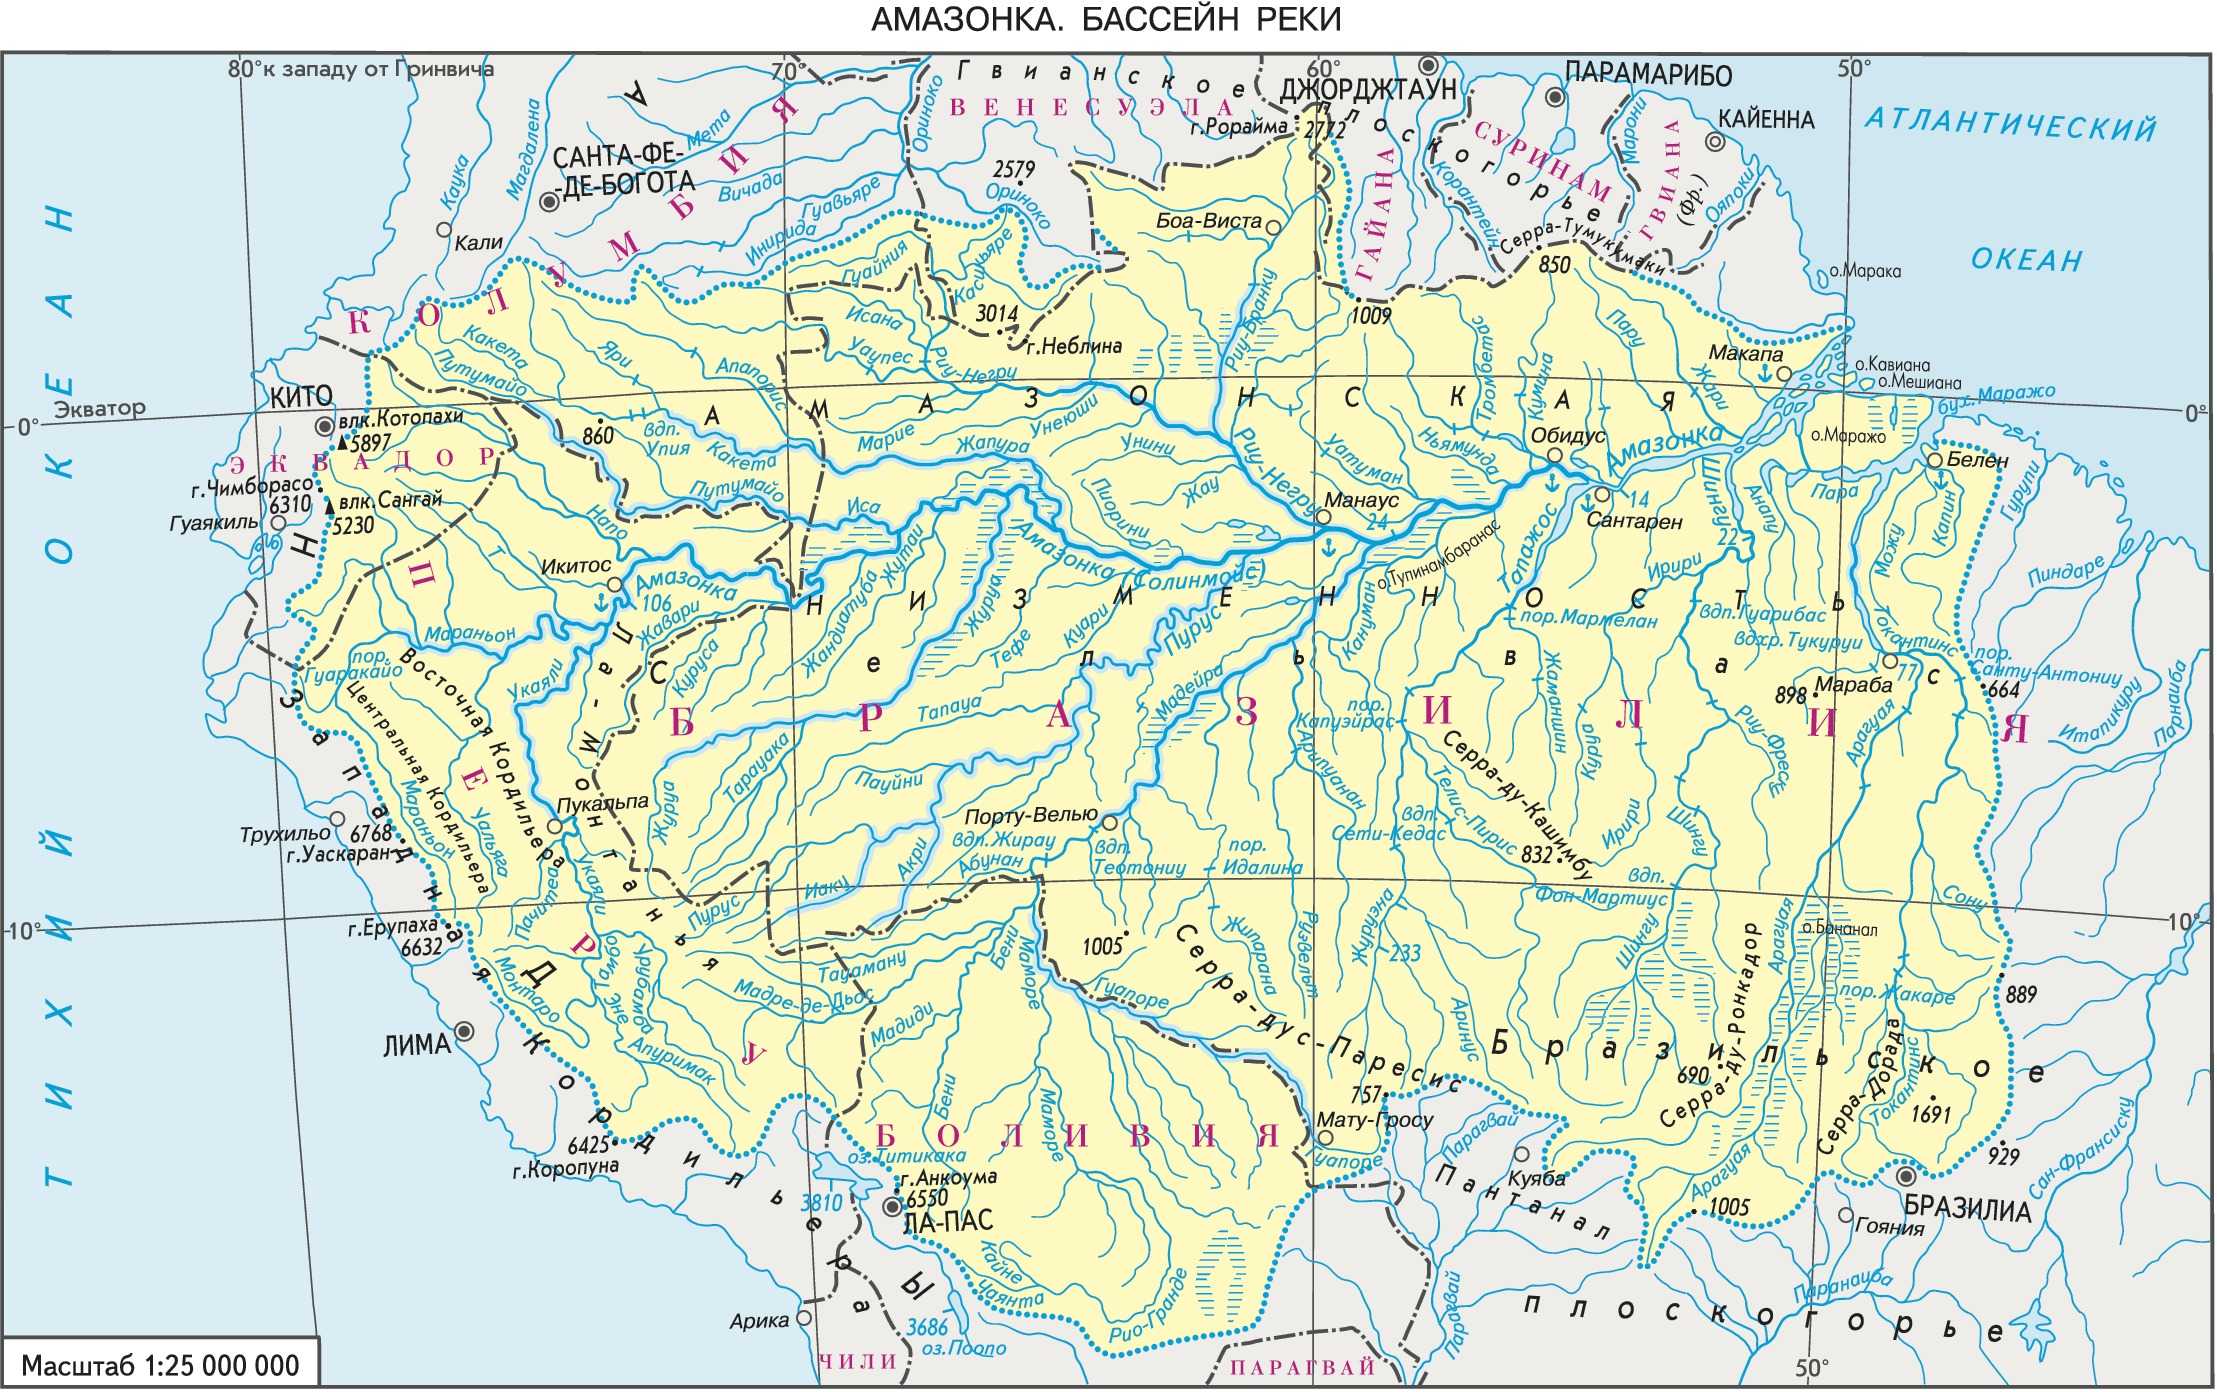 Реки и притоки южной америки. Река Амазонка на карте Южной Америки. Бассейн амазонки на карте Южной Америки. Бассейн реки Амазонка на карте. Бассейн реки Амазонка на карте Южной Америки.